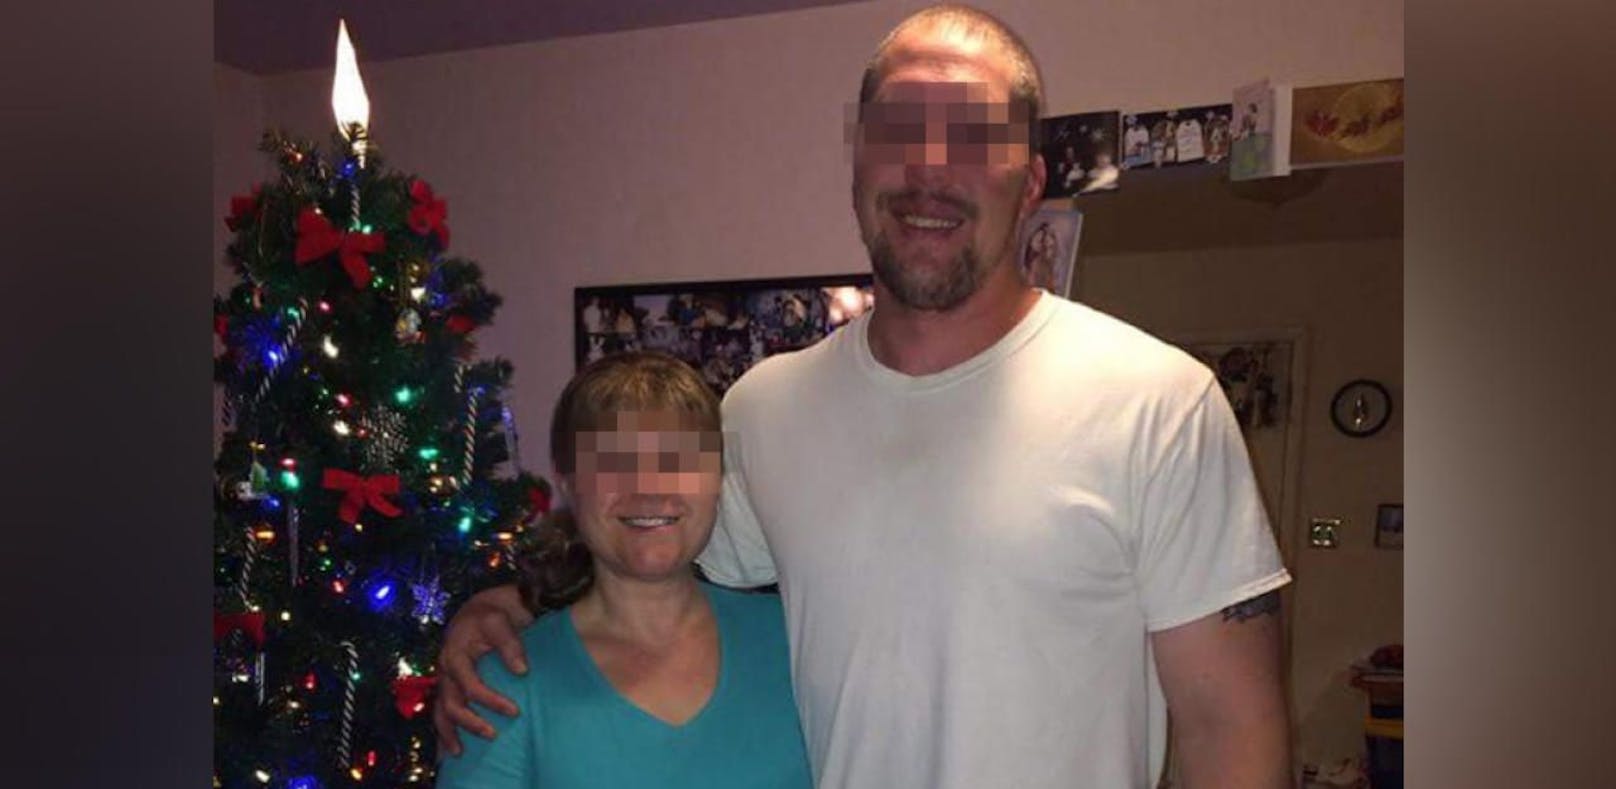 Steve und Linda K. wurden von ihrem eigenen Sohn am Silvesterabend erschossen.